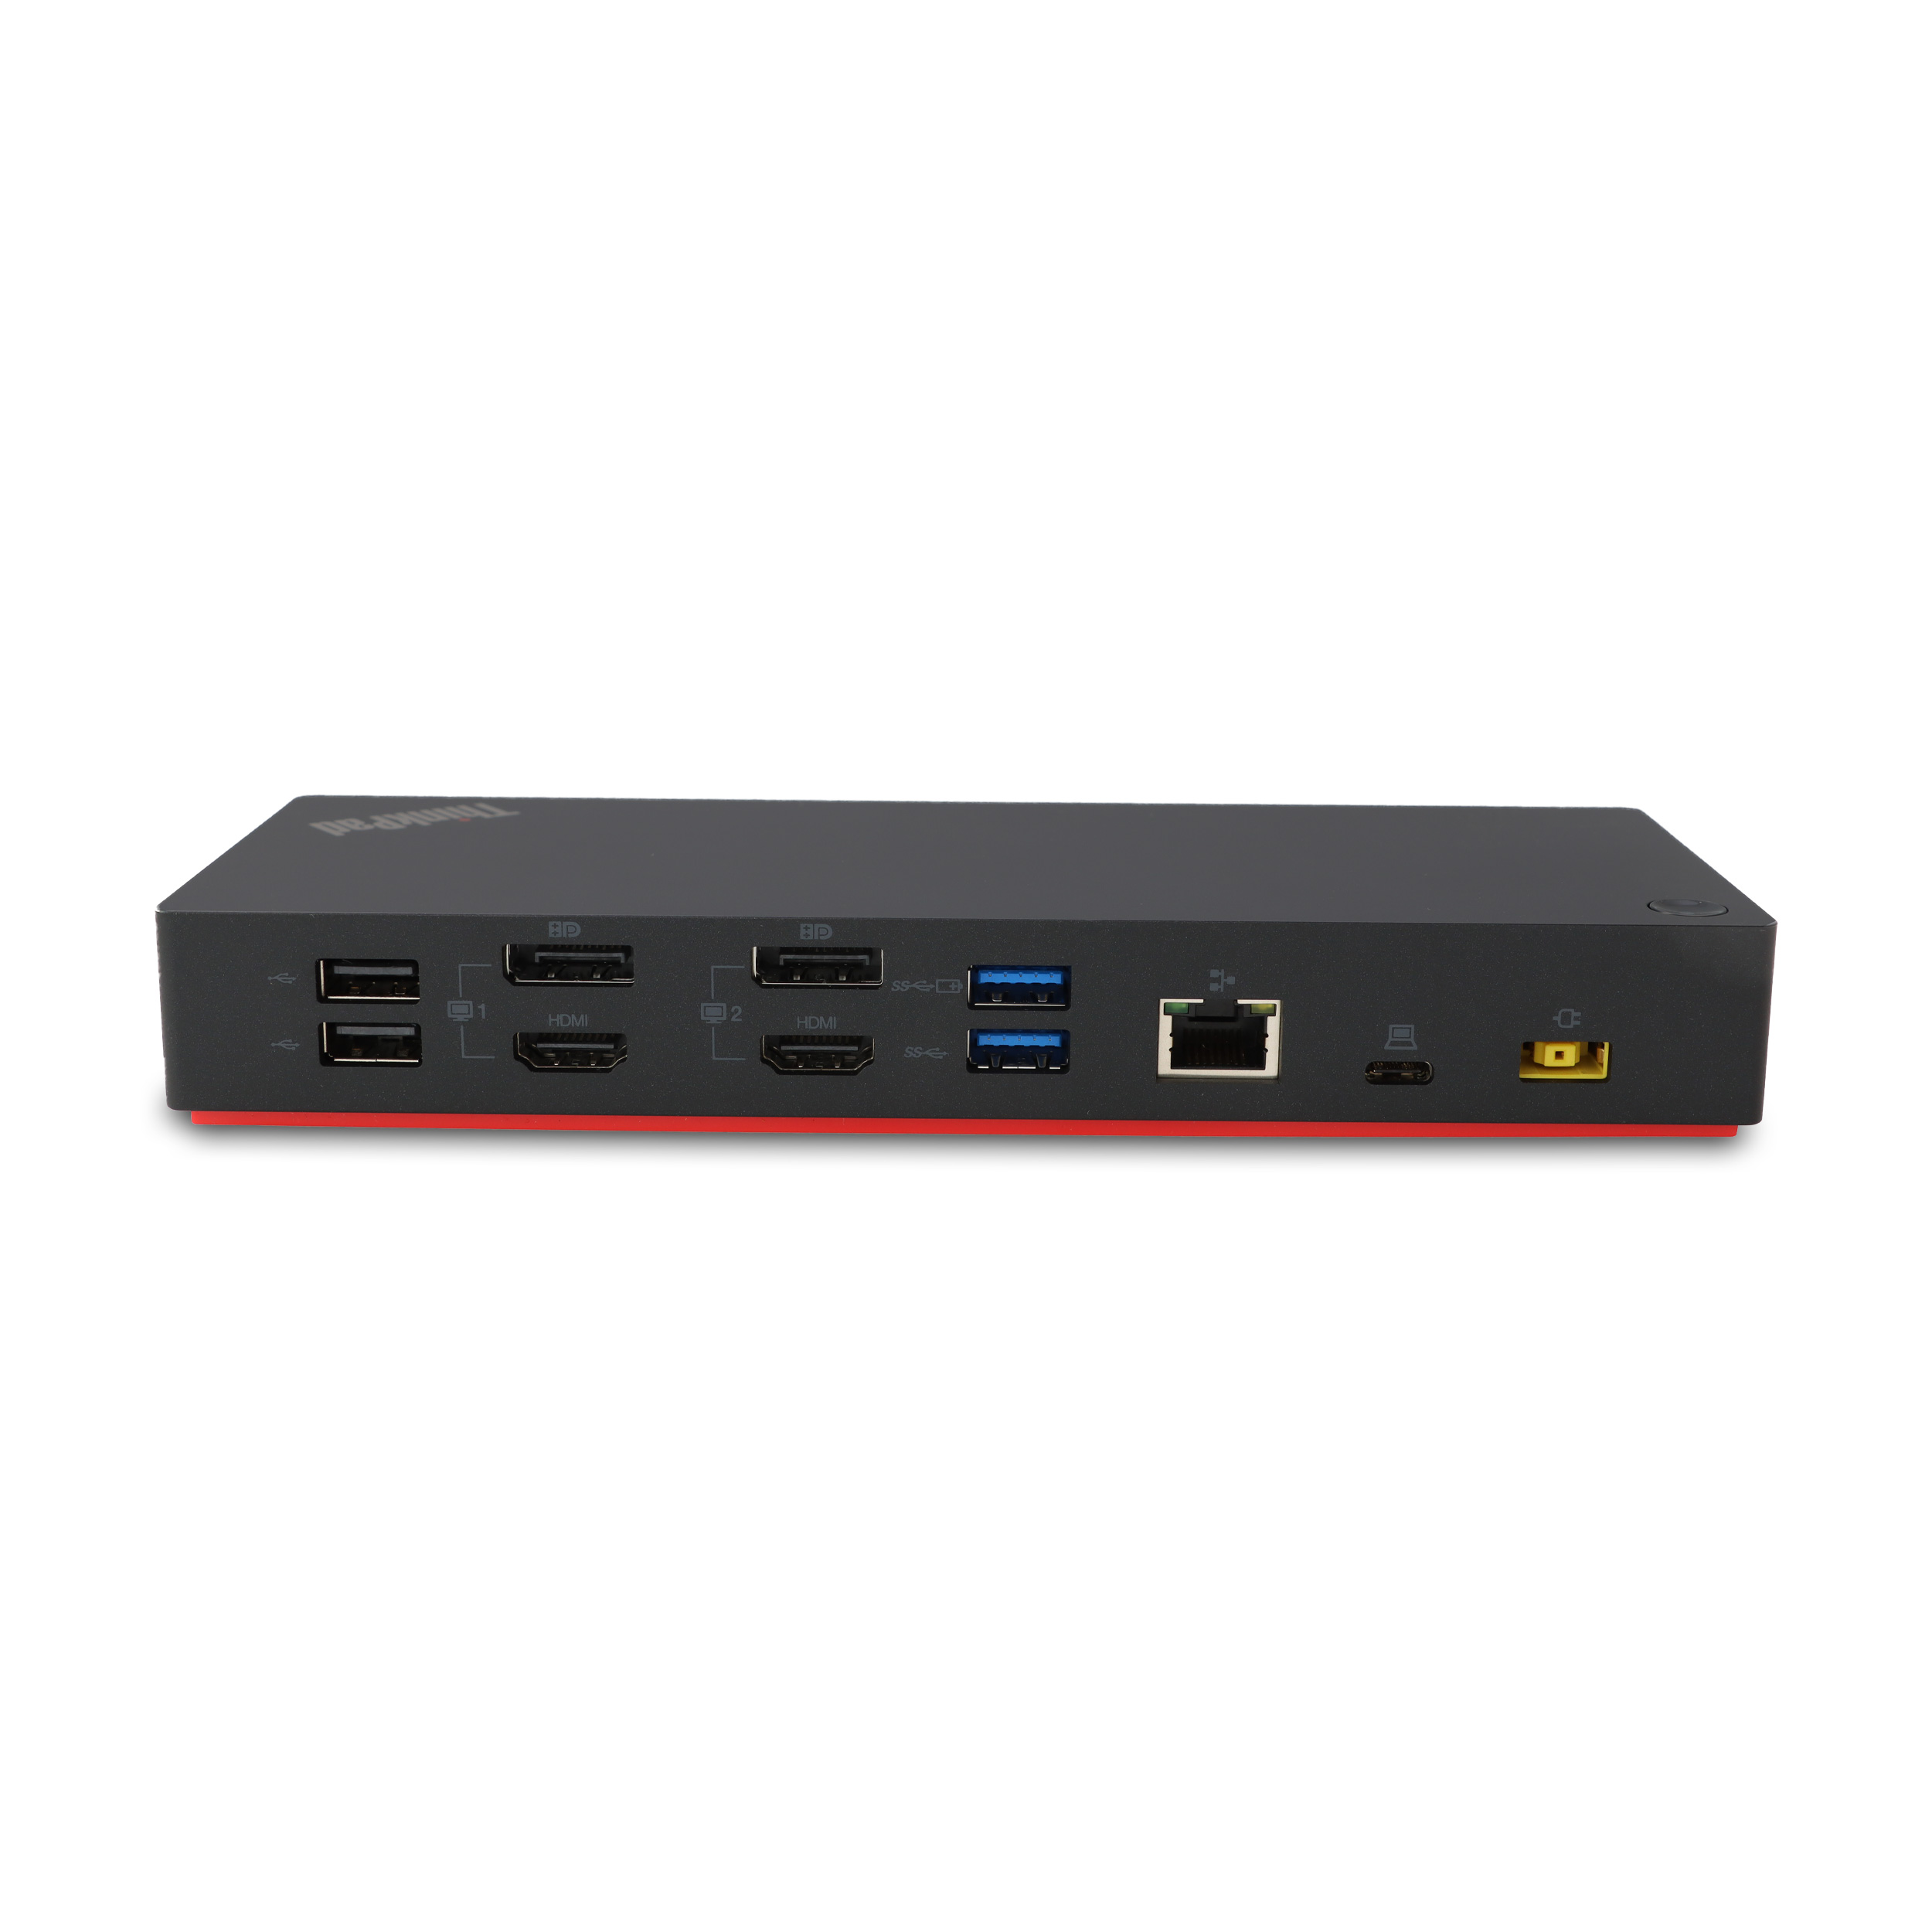 ThinkPad Hybrid USB-C with USB-A Dock Type 40AF P/N SD20Q13457 FRU P/N 03X7469